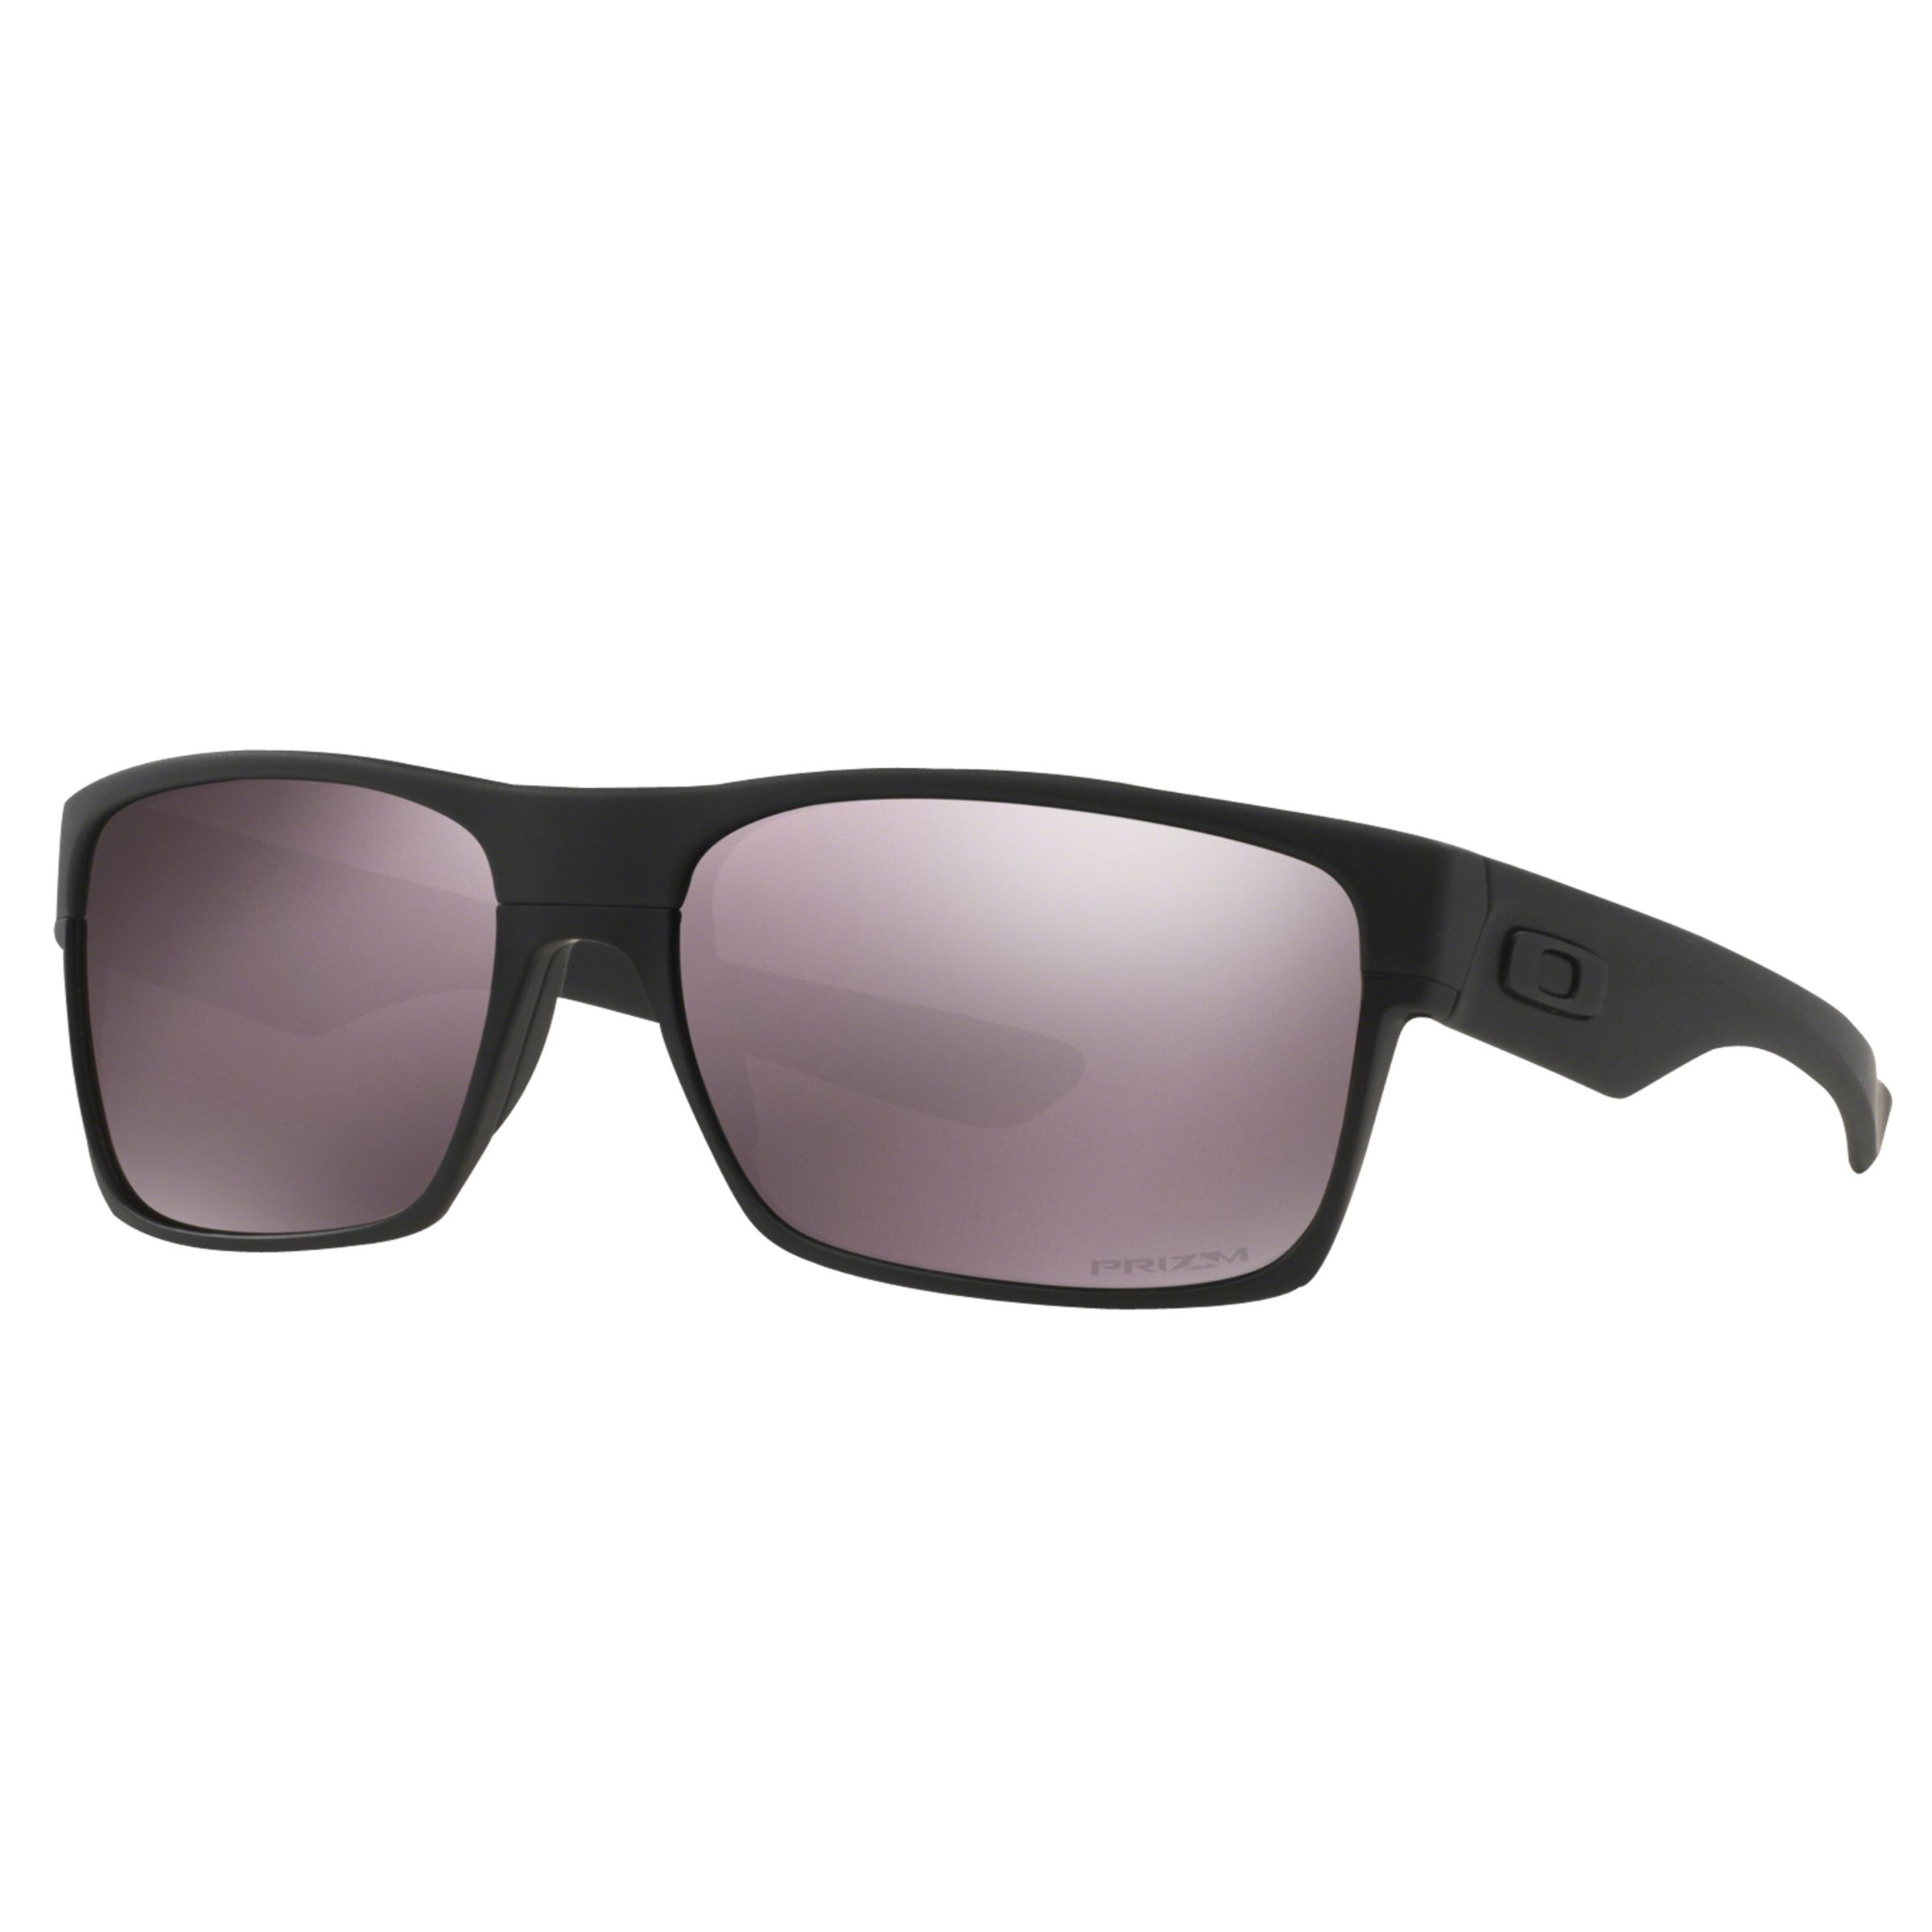 OO9189 Двусторонние поляризационные квадратные солнцезащитные очки Prizm для повседневного использования Oakley, матовое черное/серое зеркало